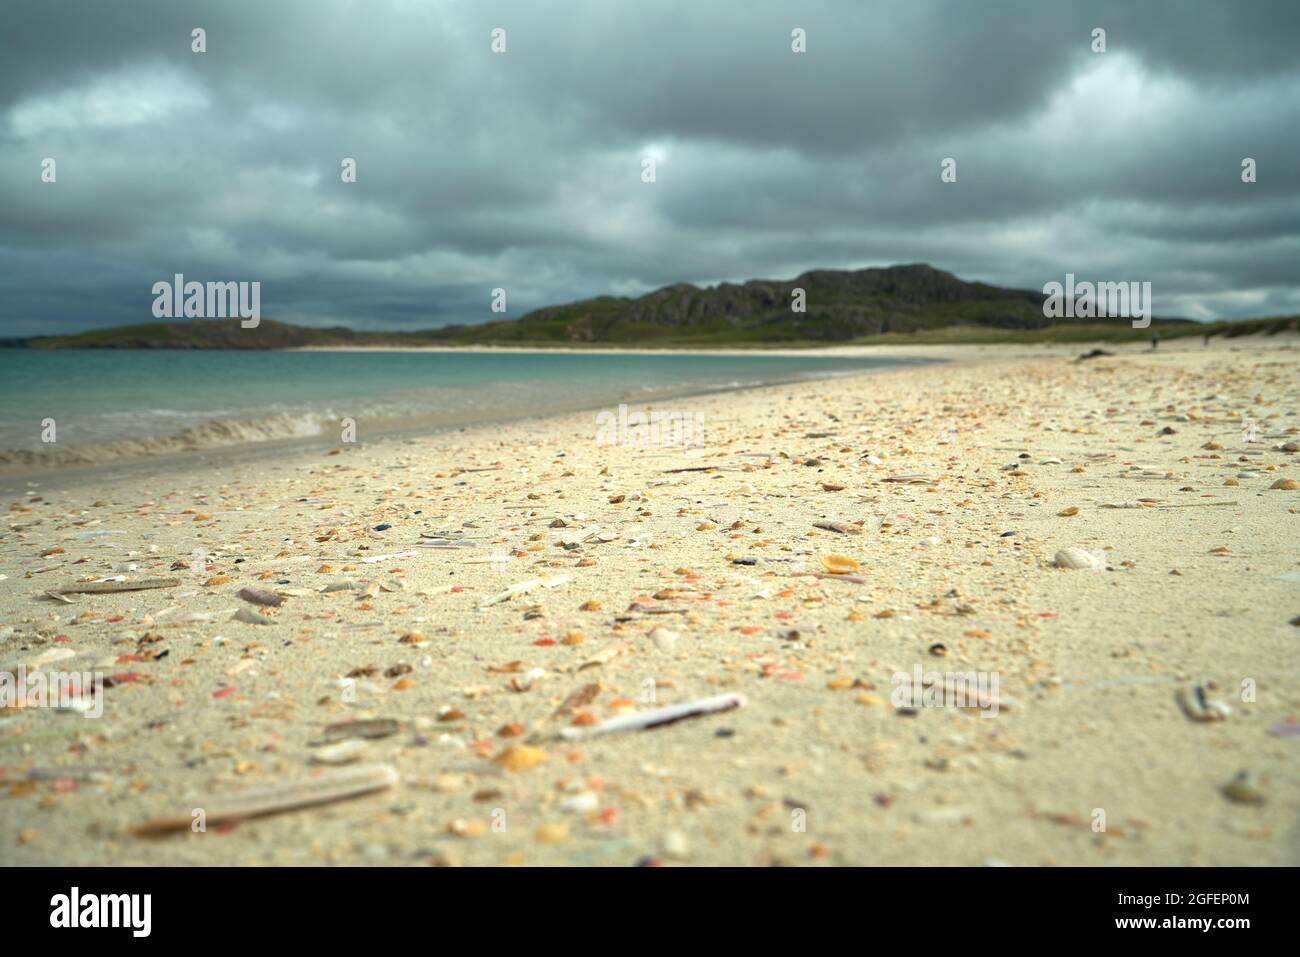 Der Muschelstrand am Reef auf der Isle of Lewis mit der Gezeitenlinie, die mit bunten Muscheln übersät ist. Stockfoto